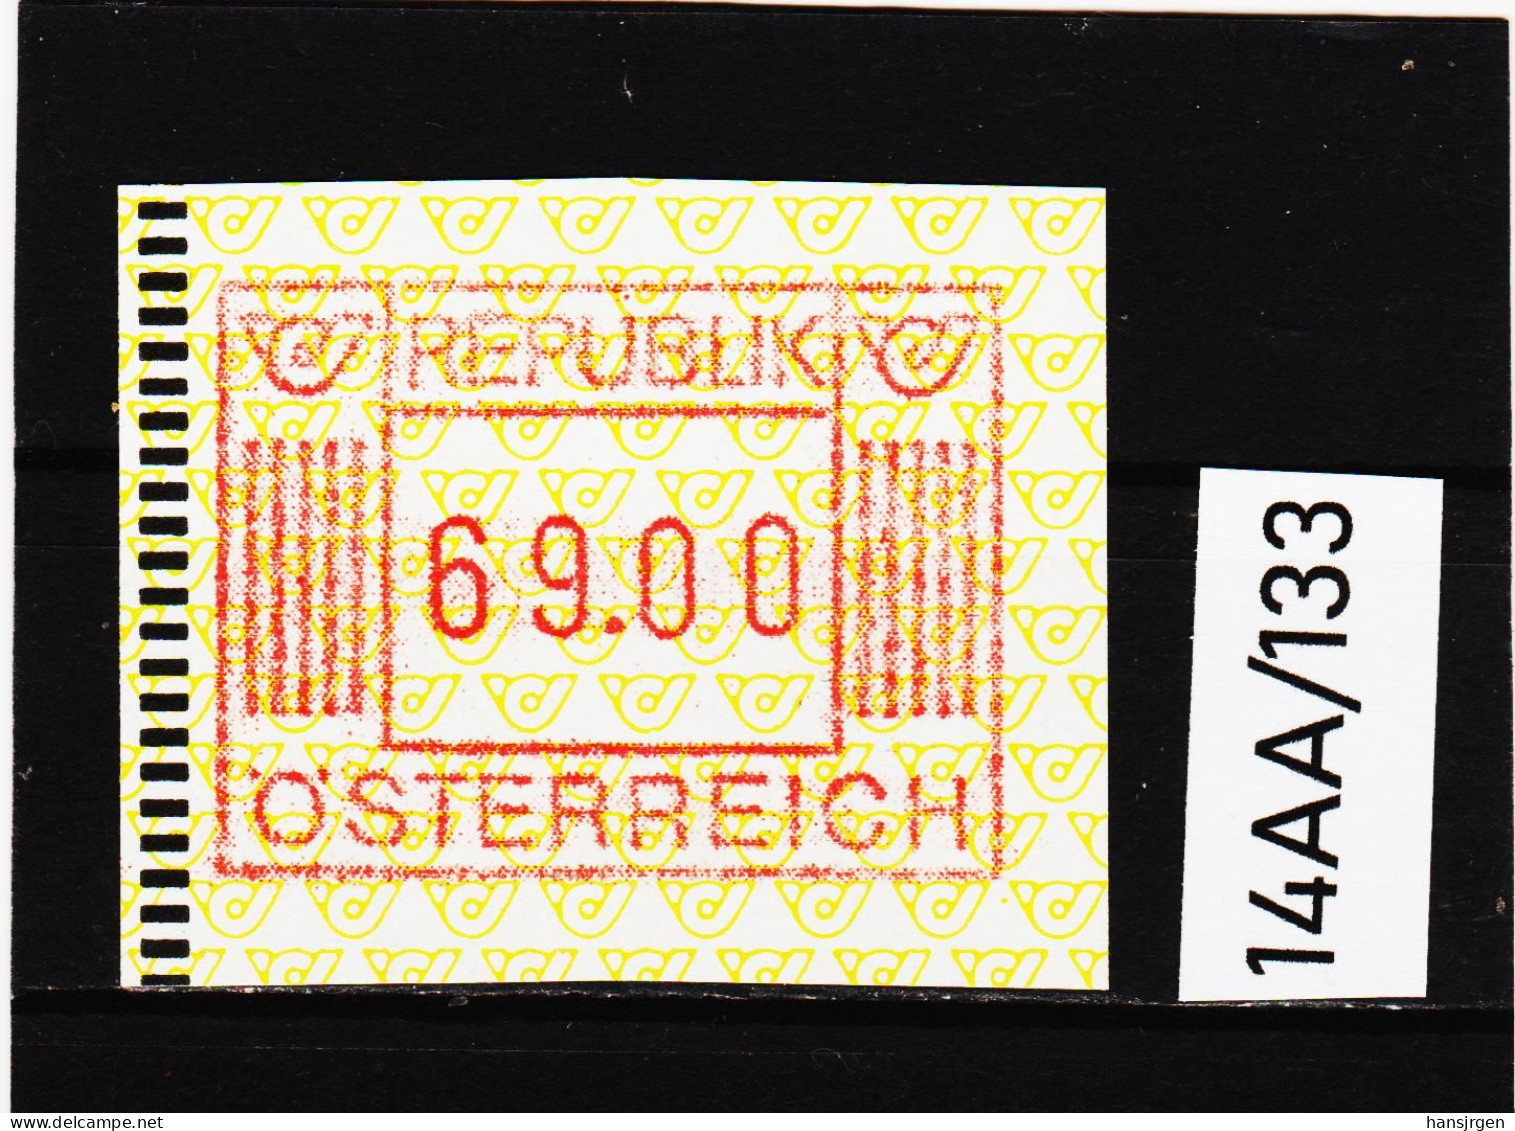 14AA/133  ÖSTERREICH 1983 AUTOMATENMARKEN  A N K  1. AUSGABE  69,00 SCHILLING   ** Postfrisch - Vignette [ATM]